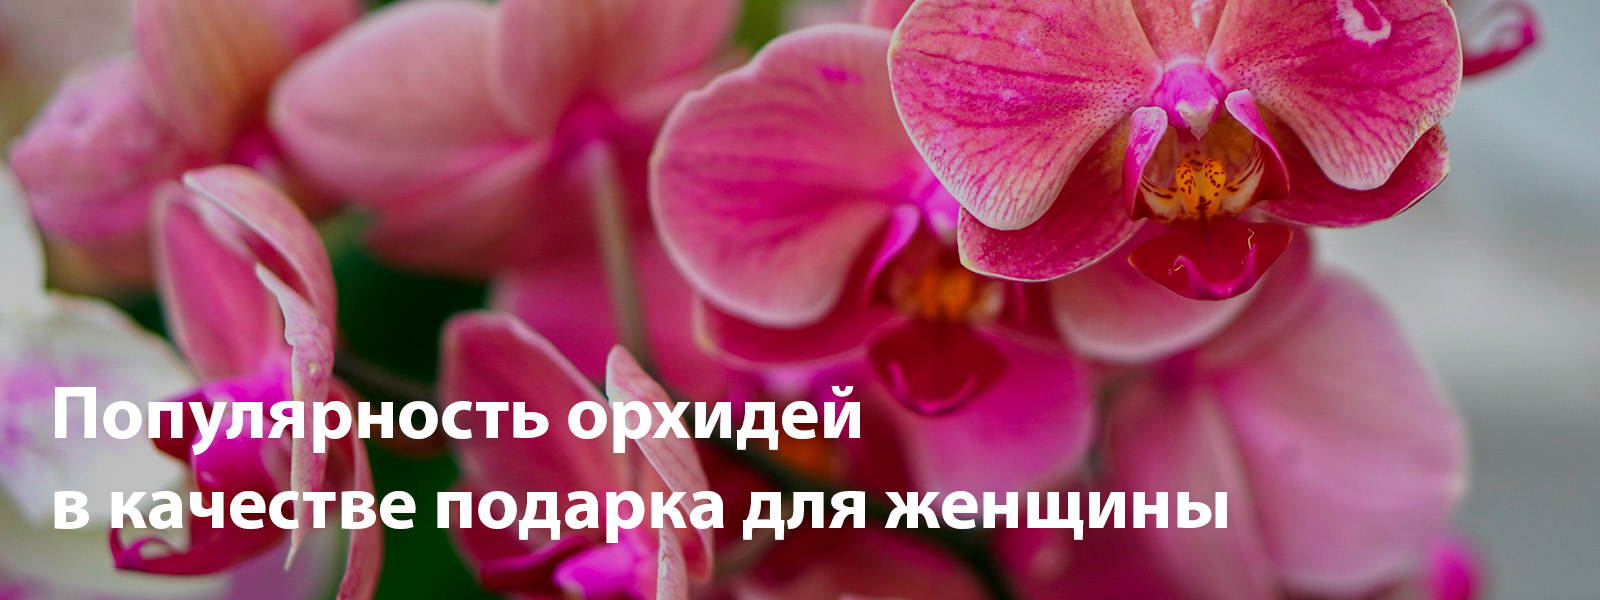 Популярность орхидей в качестве подарка для женщины